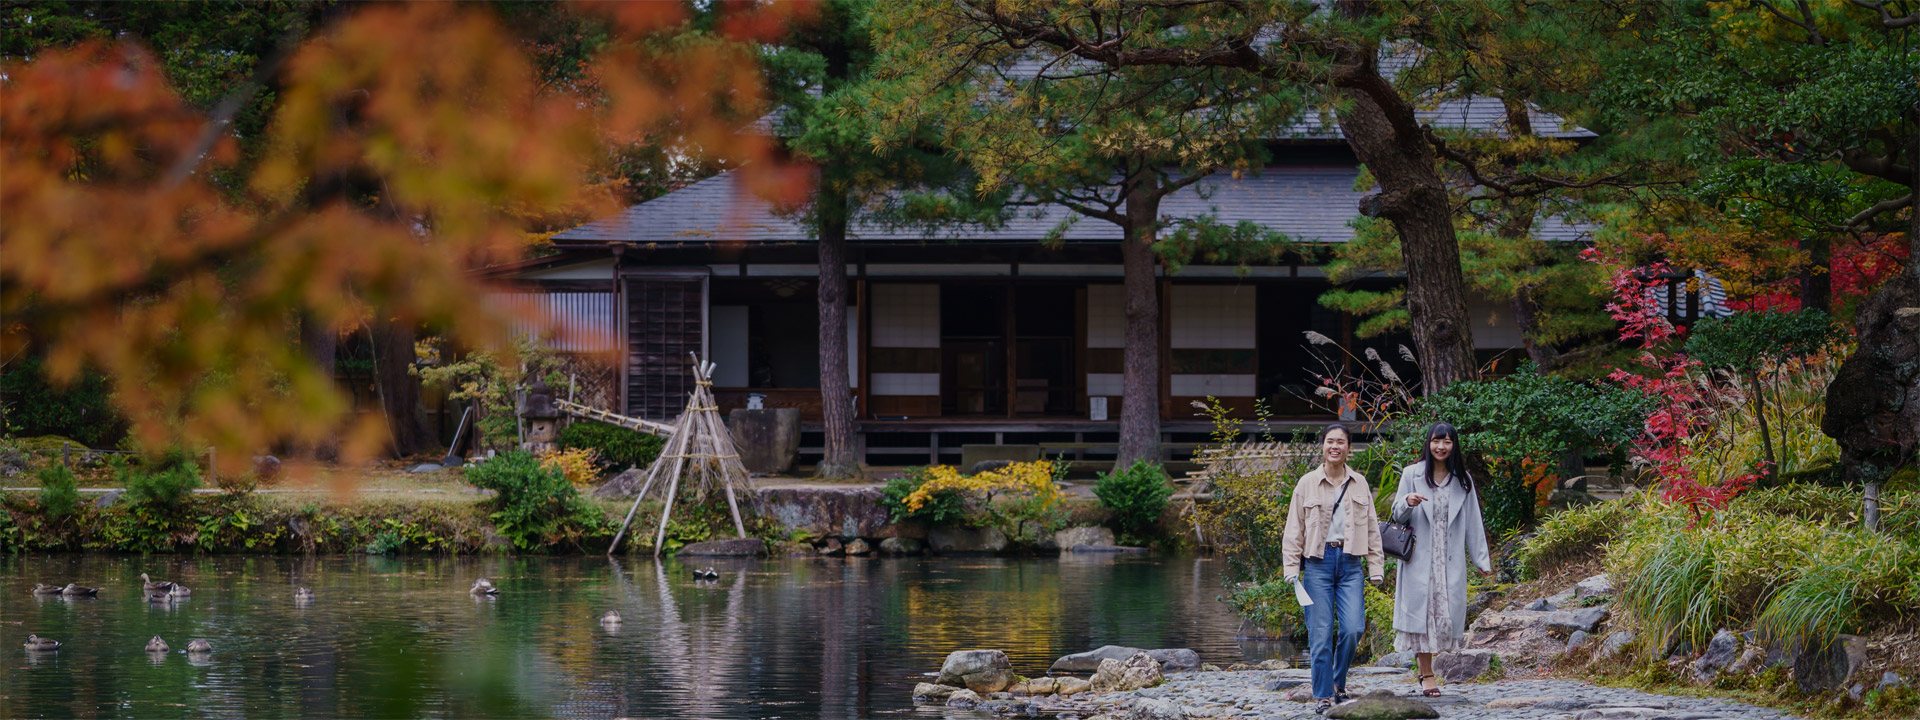 感受季節的絕景和體驗日本特色文化之旅